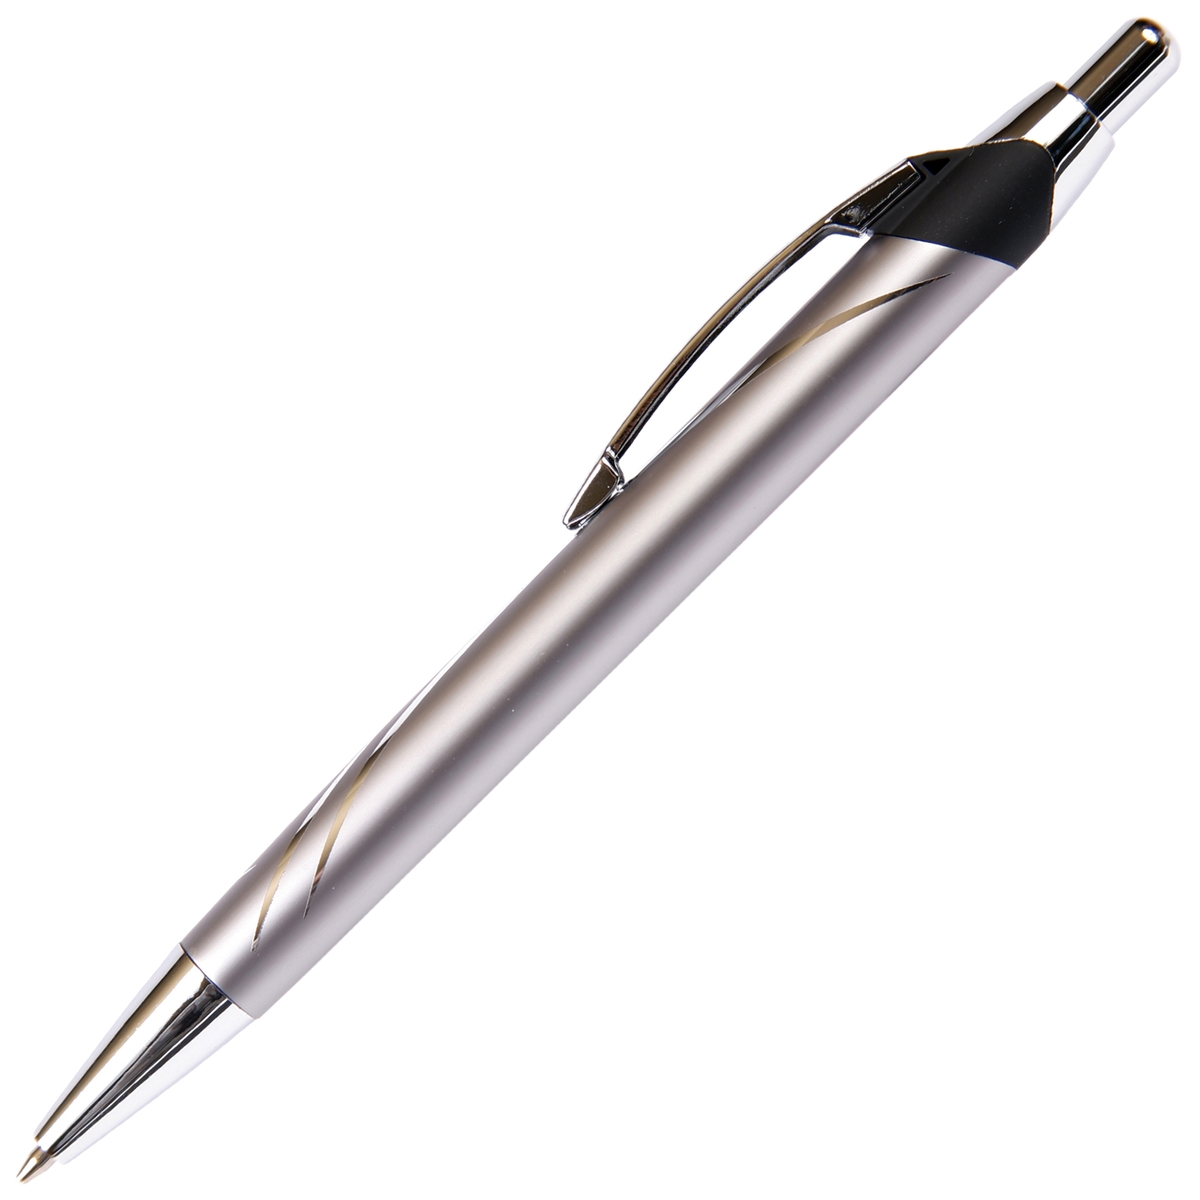 C204 - Silver Ball Point Pen by Lanier Pens